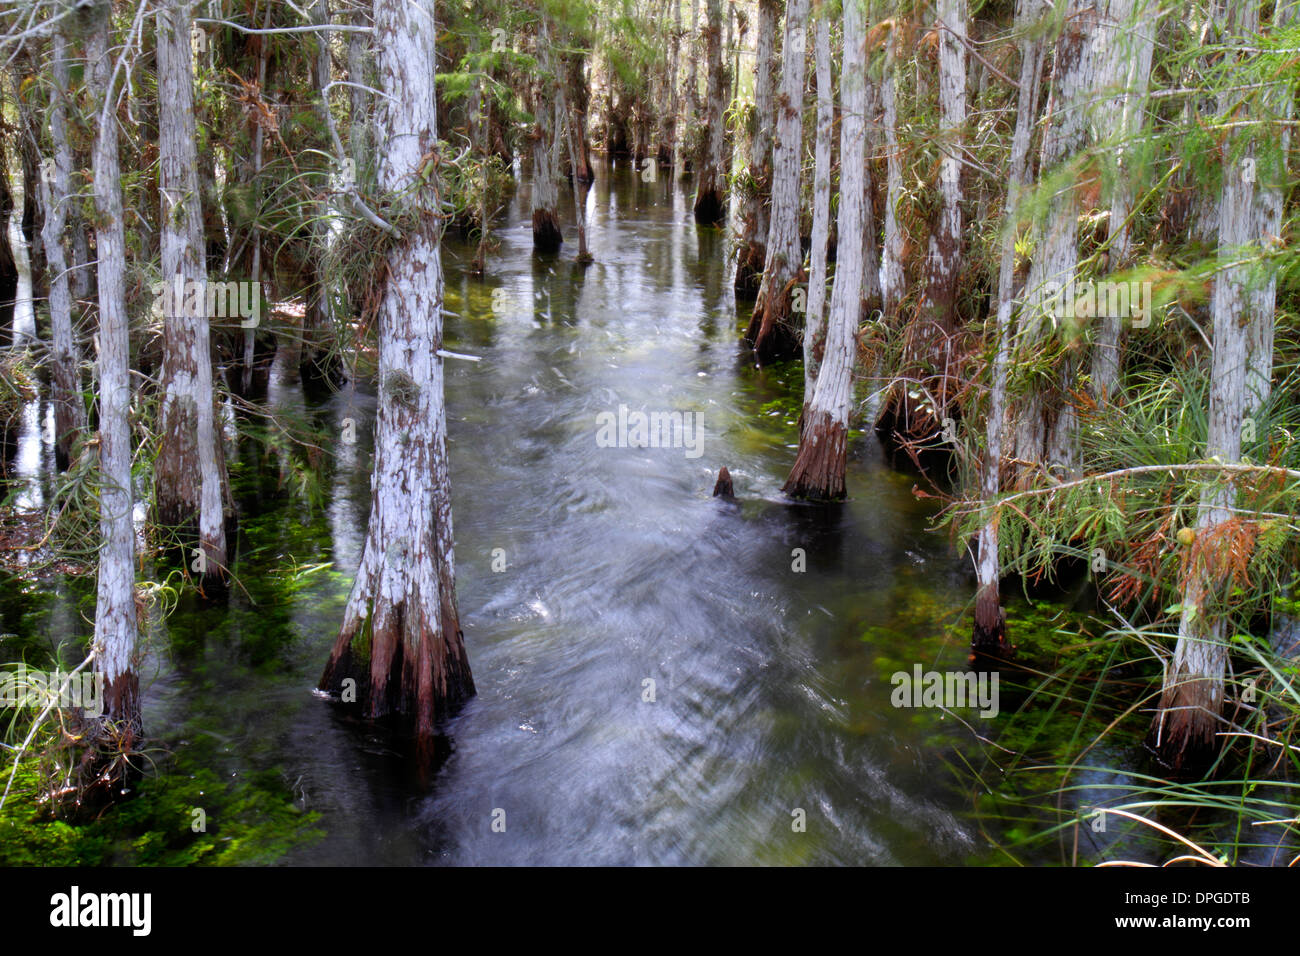 Florida Maimi Everglades National Park Main Park Road, Pa-hay-okee si affacciano cipressi alberi che precipitano acqua in movimento, natura scenario naturale, Foto Stock